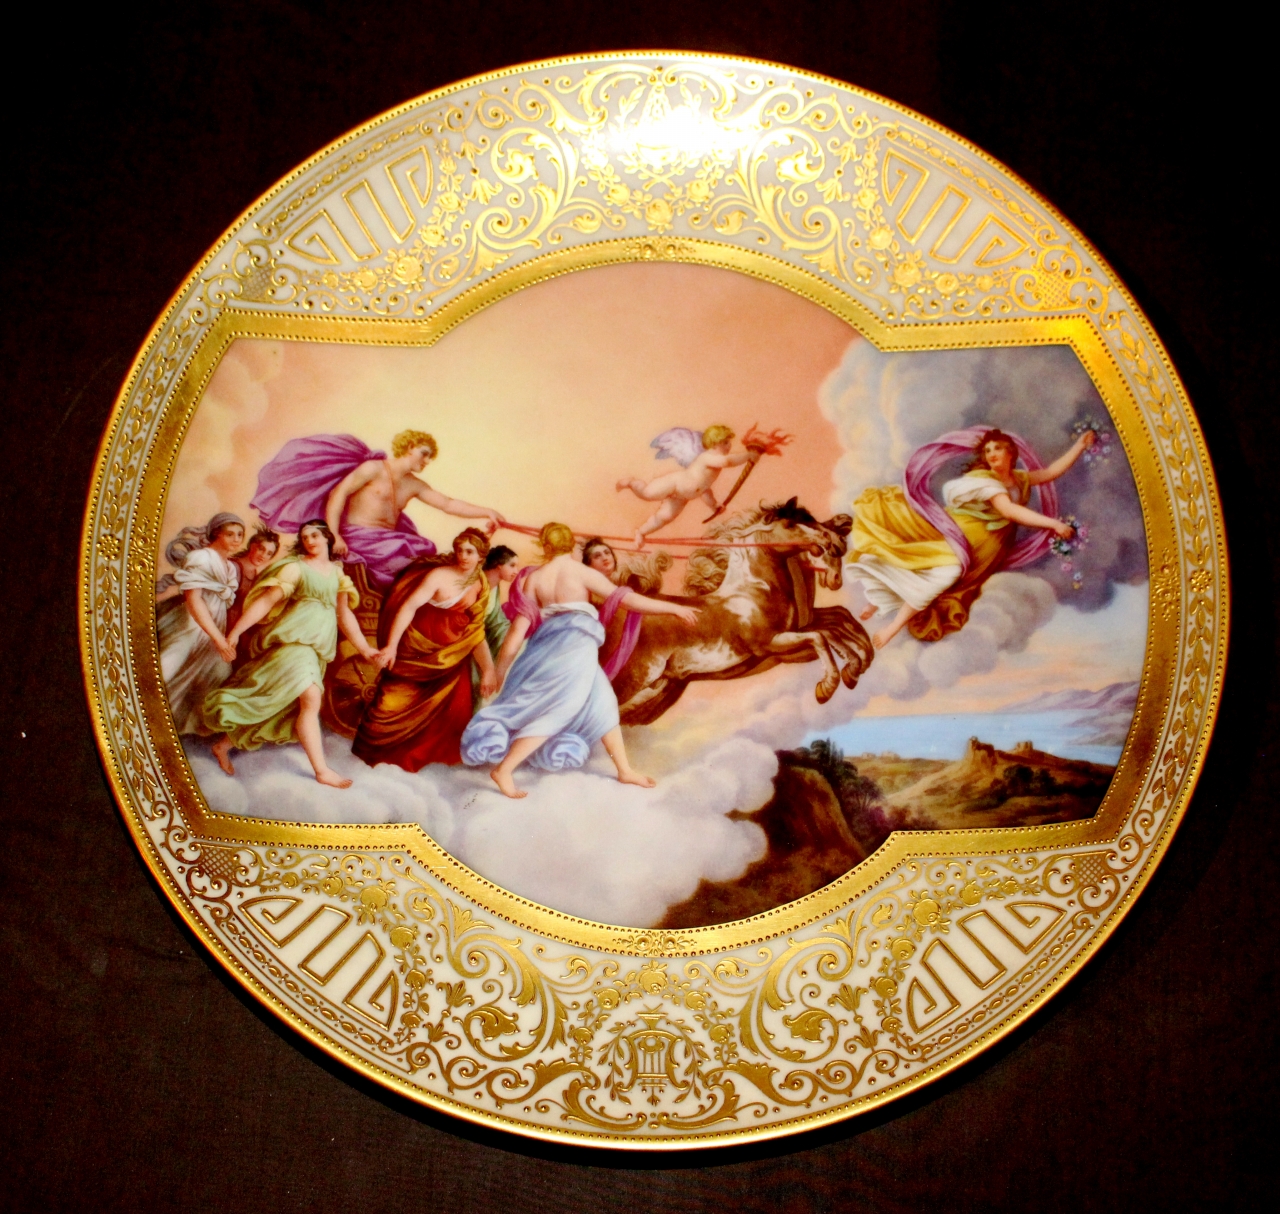 Aurora, Apollo sul carro del sole, motivi decorativi a girali, festone, ghirlanda (piatto) - manifattura di Dresda (secc. XIX-XX)